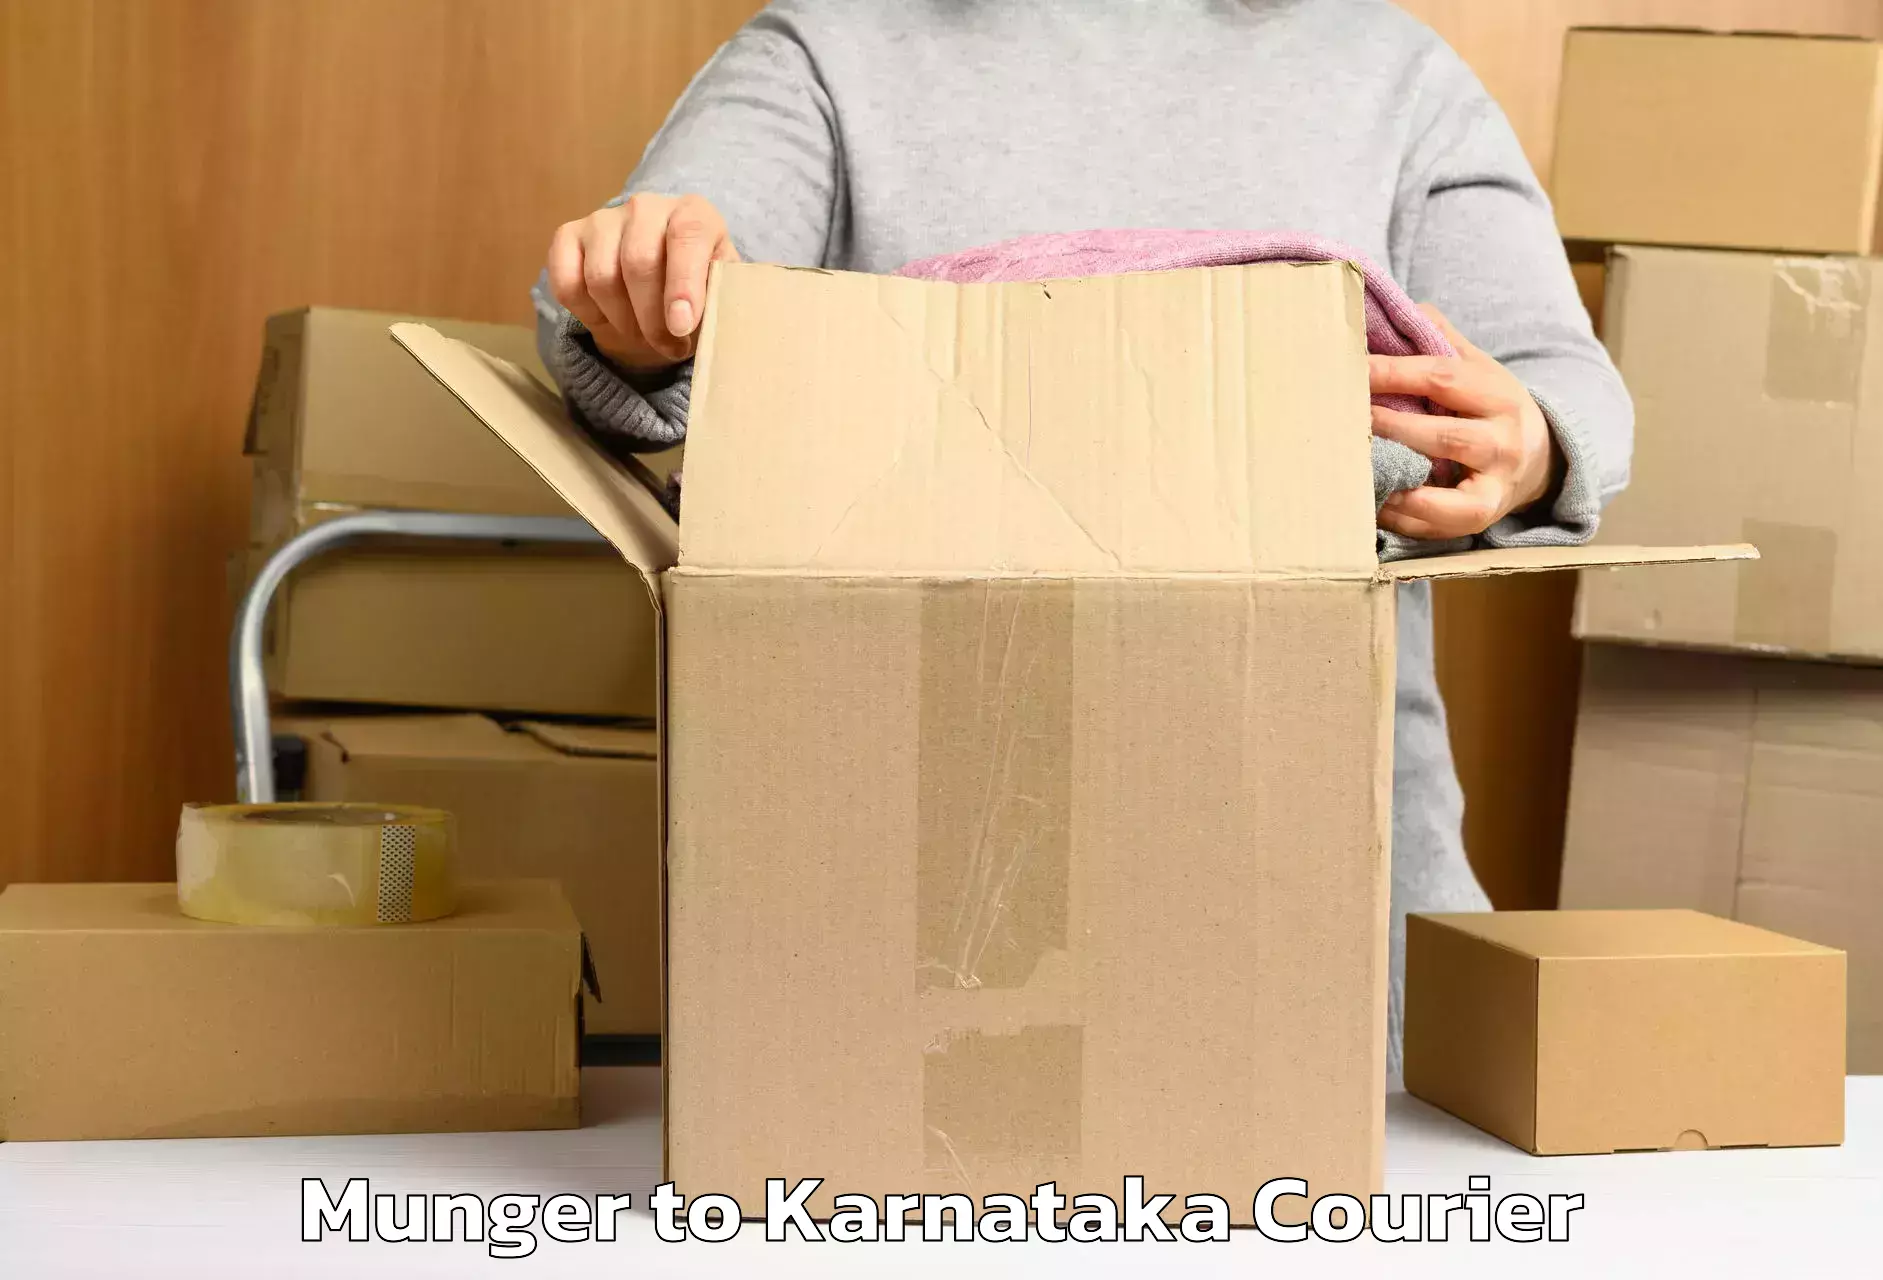 Express baggage shipping Munger to Karnataka